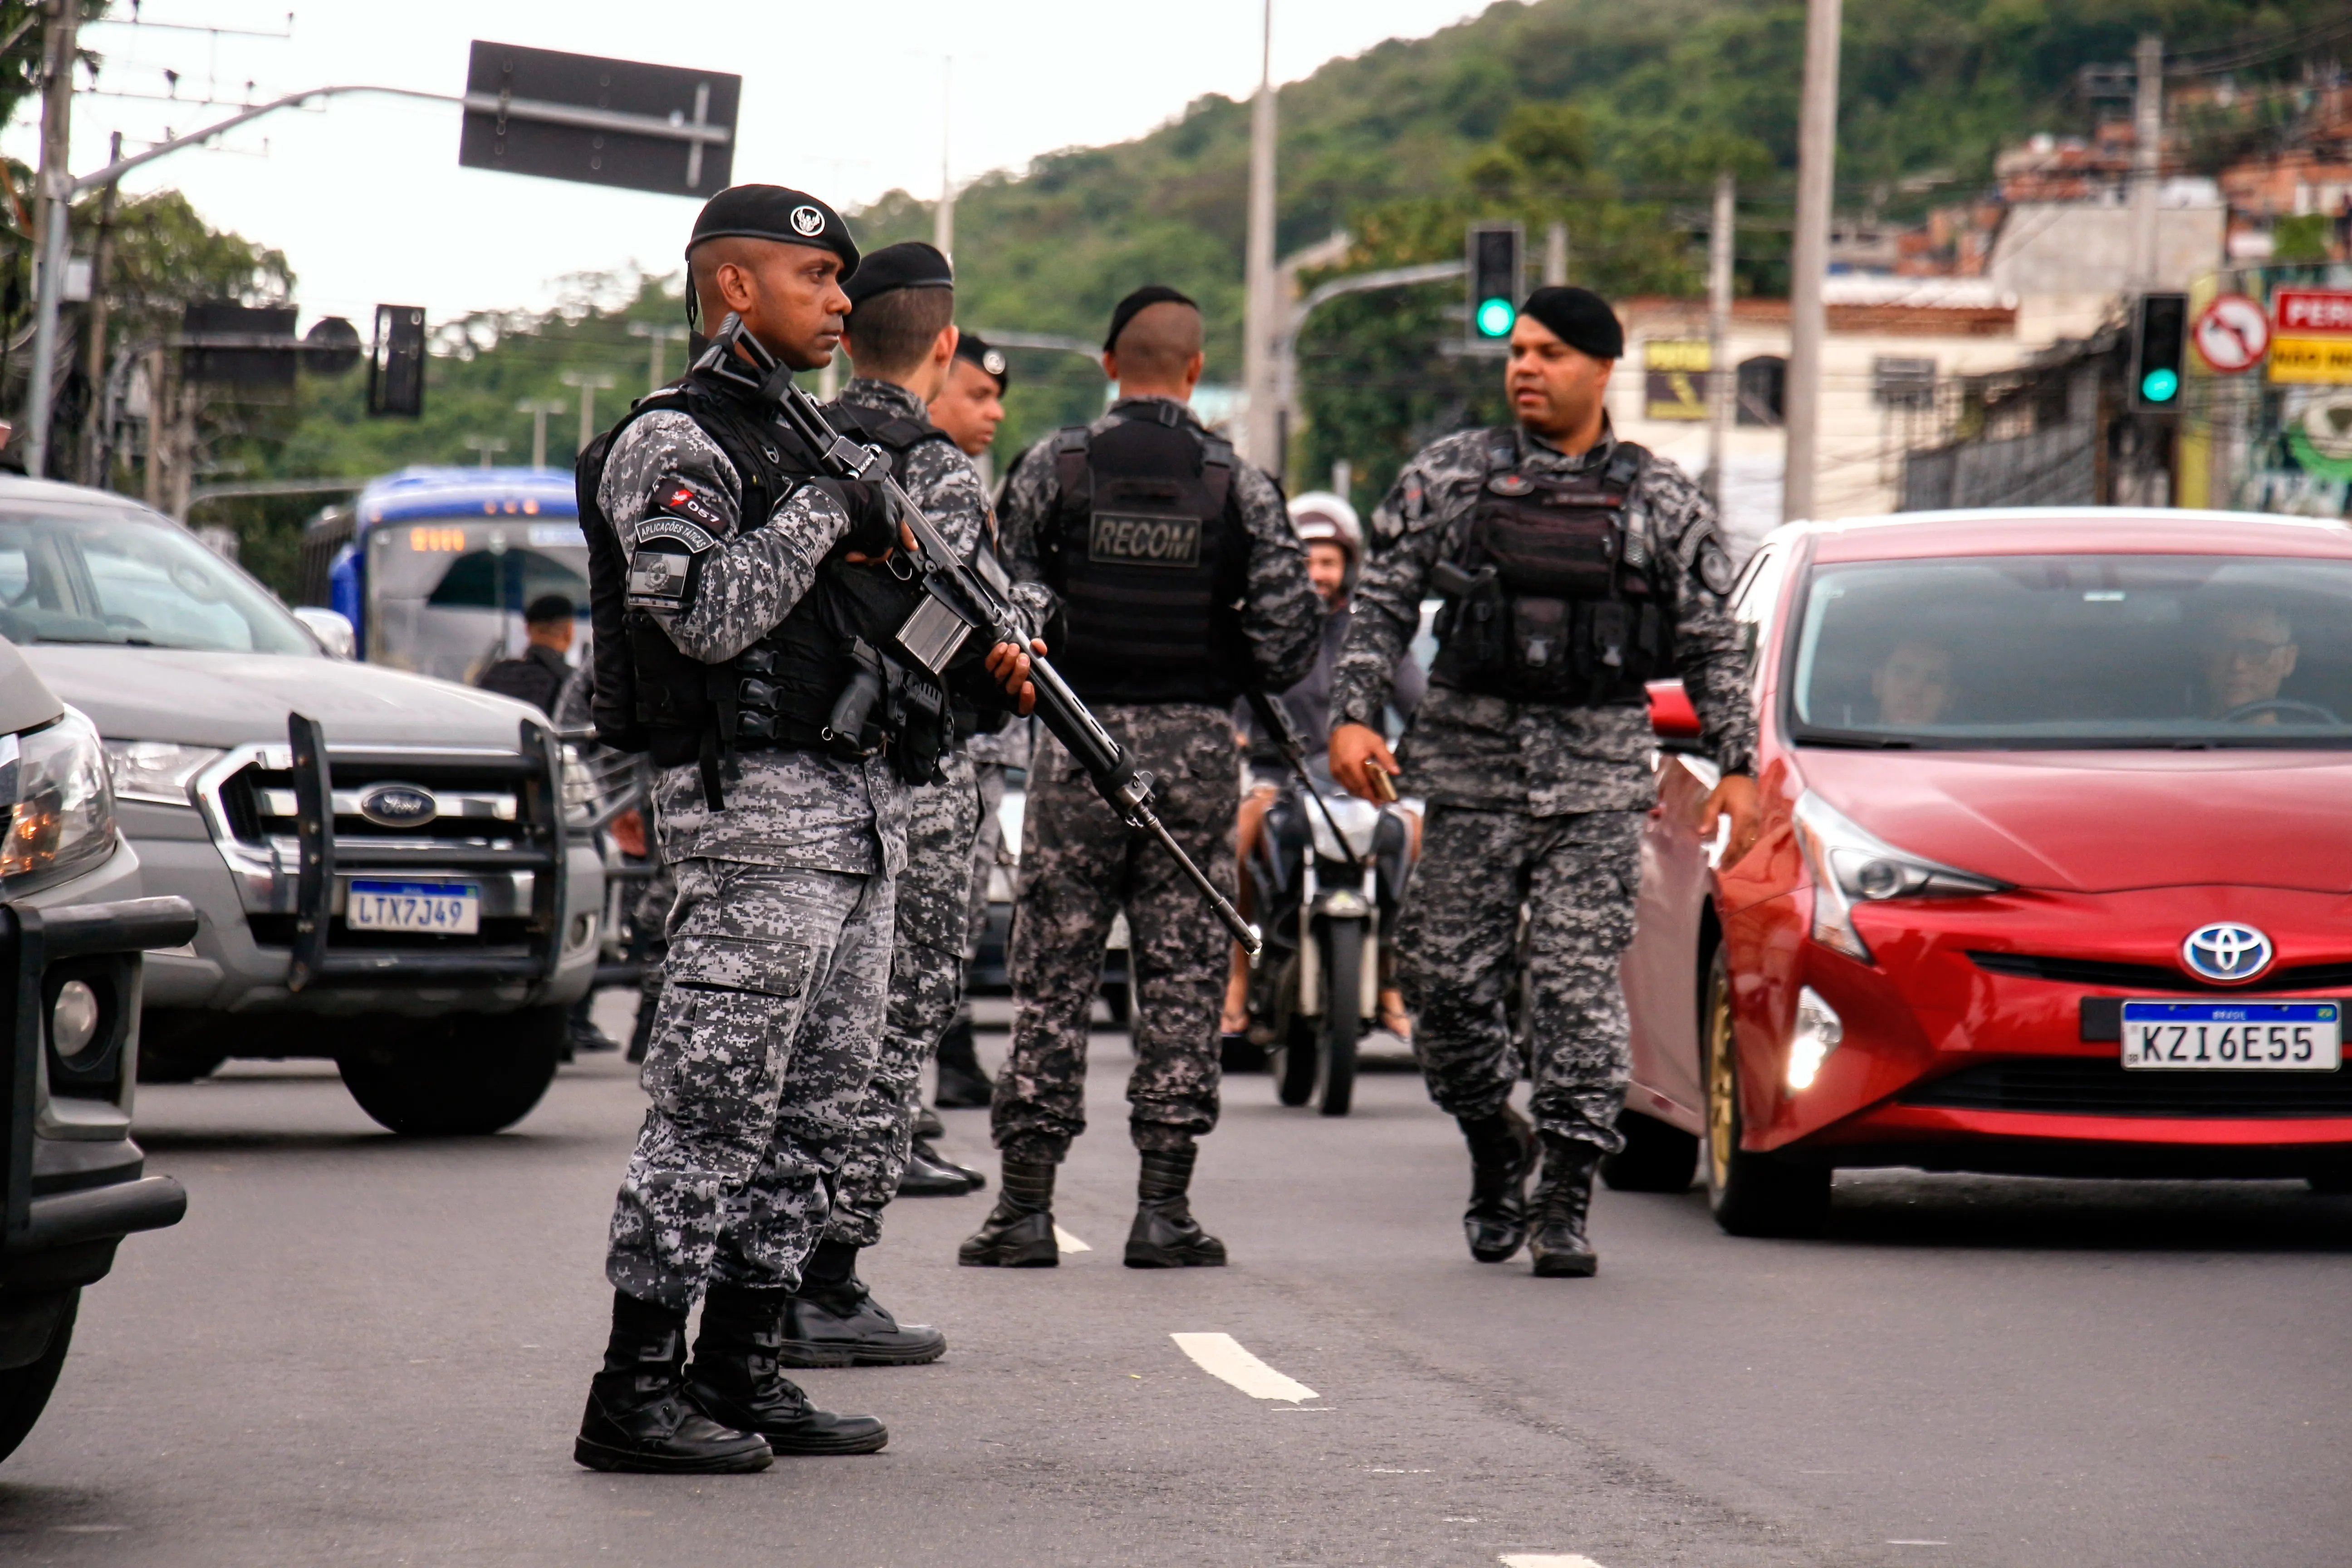 Clima no Campinho, Praça Seca, após morte do policial do Bope